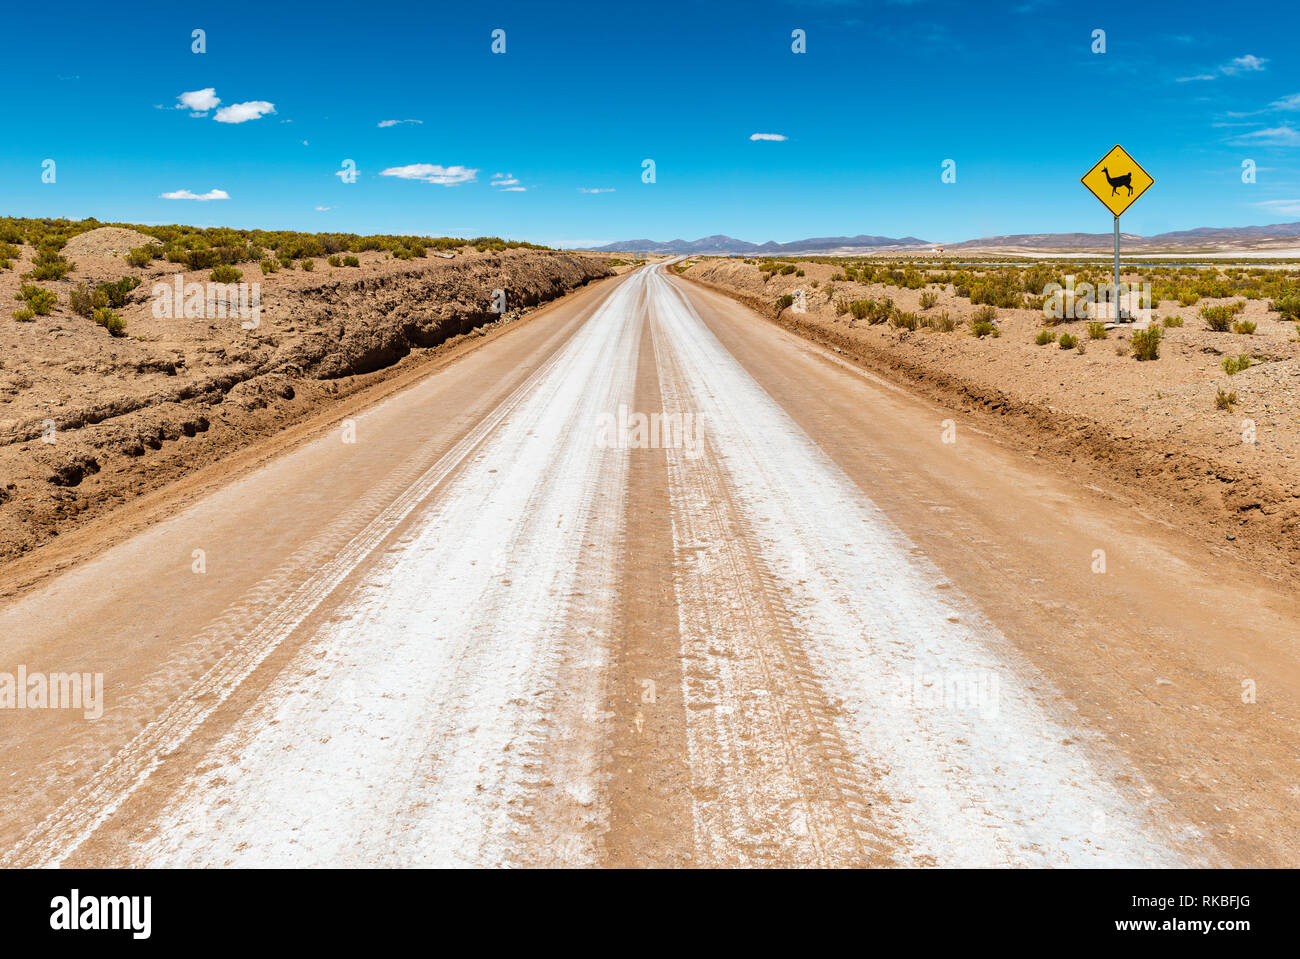 Landschaft Foto einer Autobahn, Straße in der Uyuni Salzsee Region (Salar de Uyuni) mit einem Warnschild: Lama auf der Straße! Bolivien, Südamerika. Stockfoto